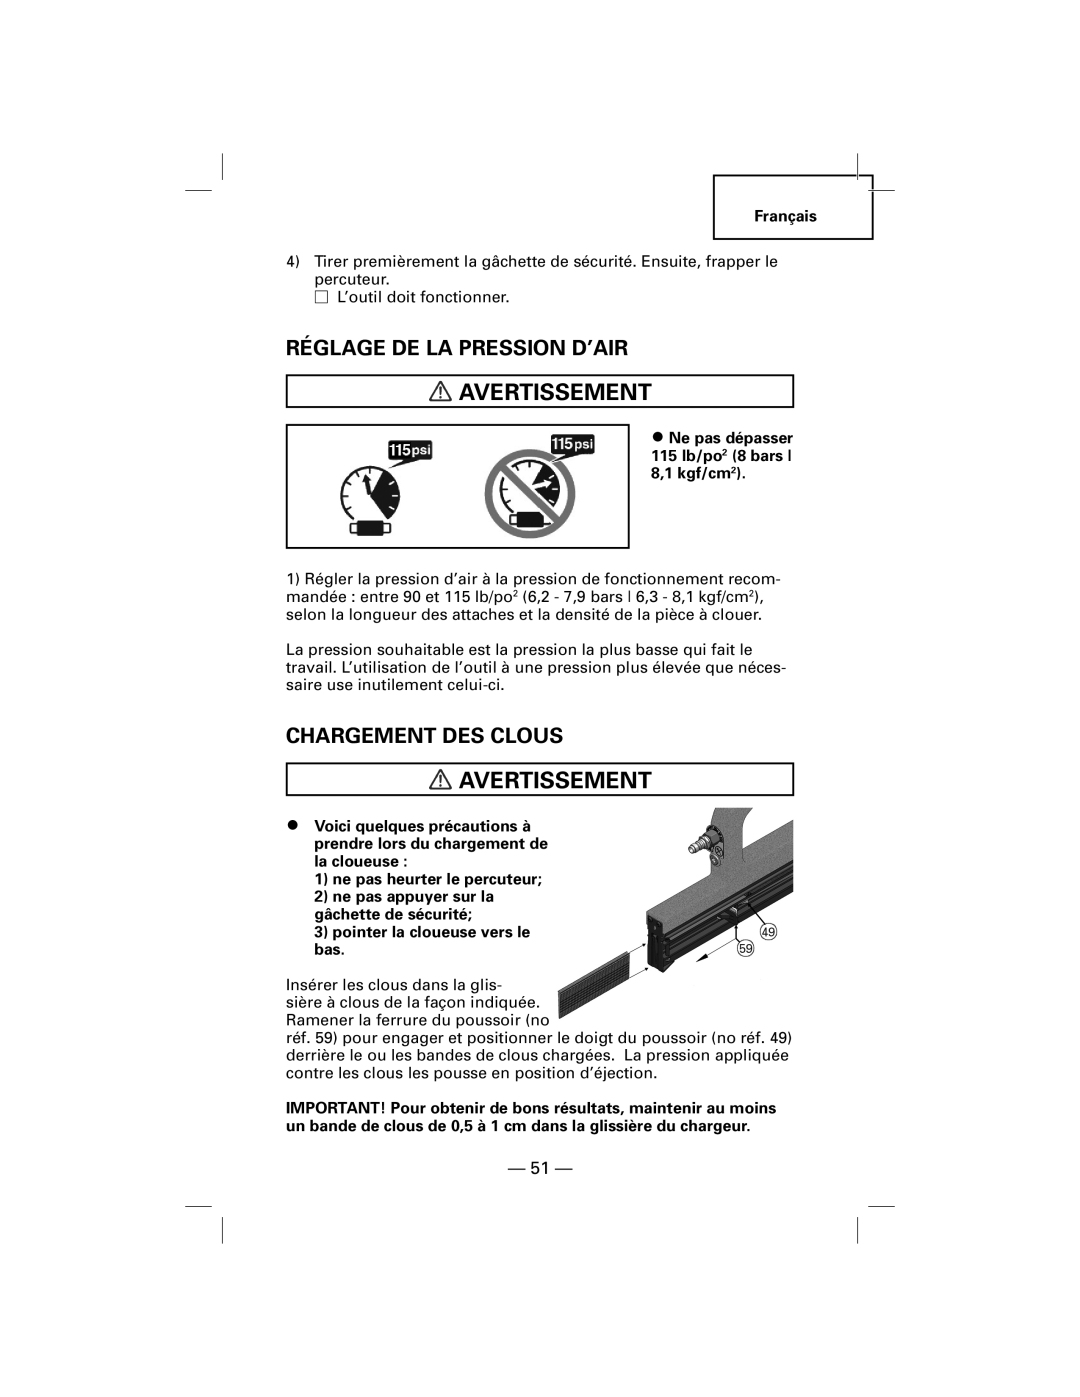 Hitachi NT50AGF manual Réglage De La Pression D’Air, Chargement Des Clous, Avertissement 